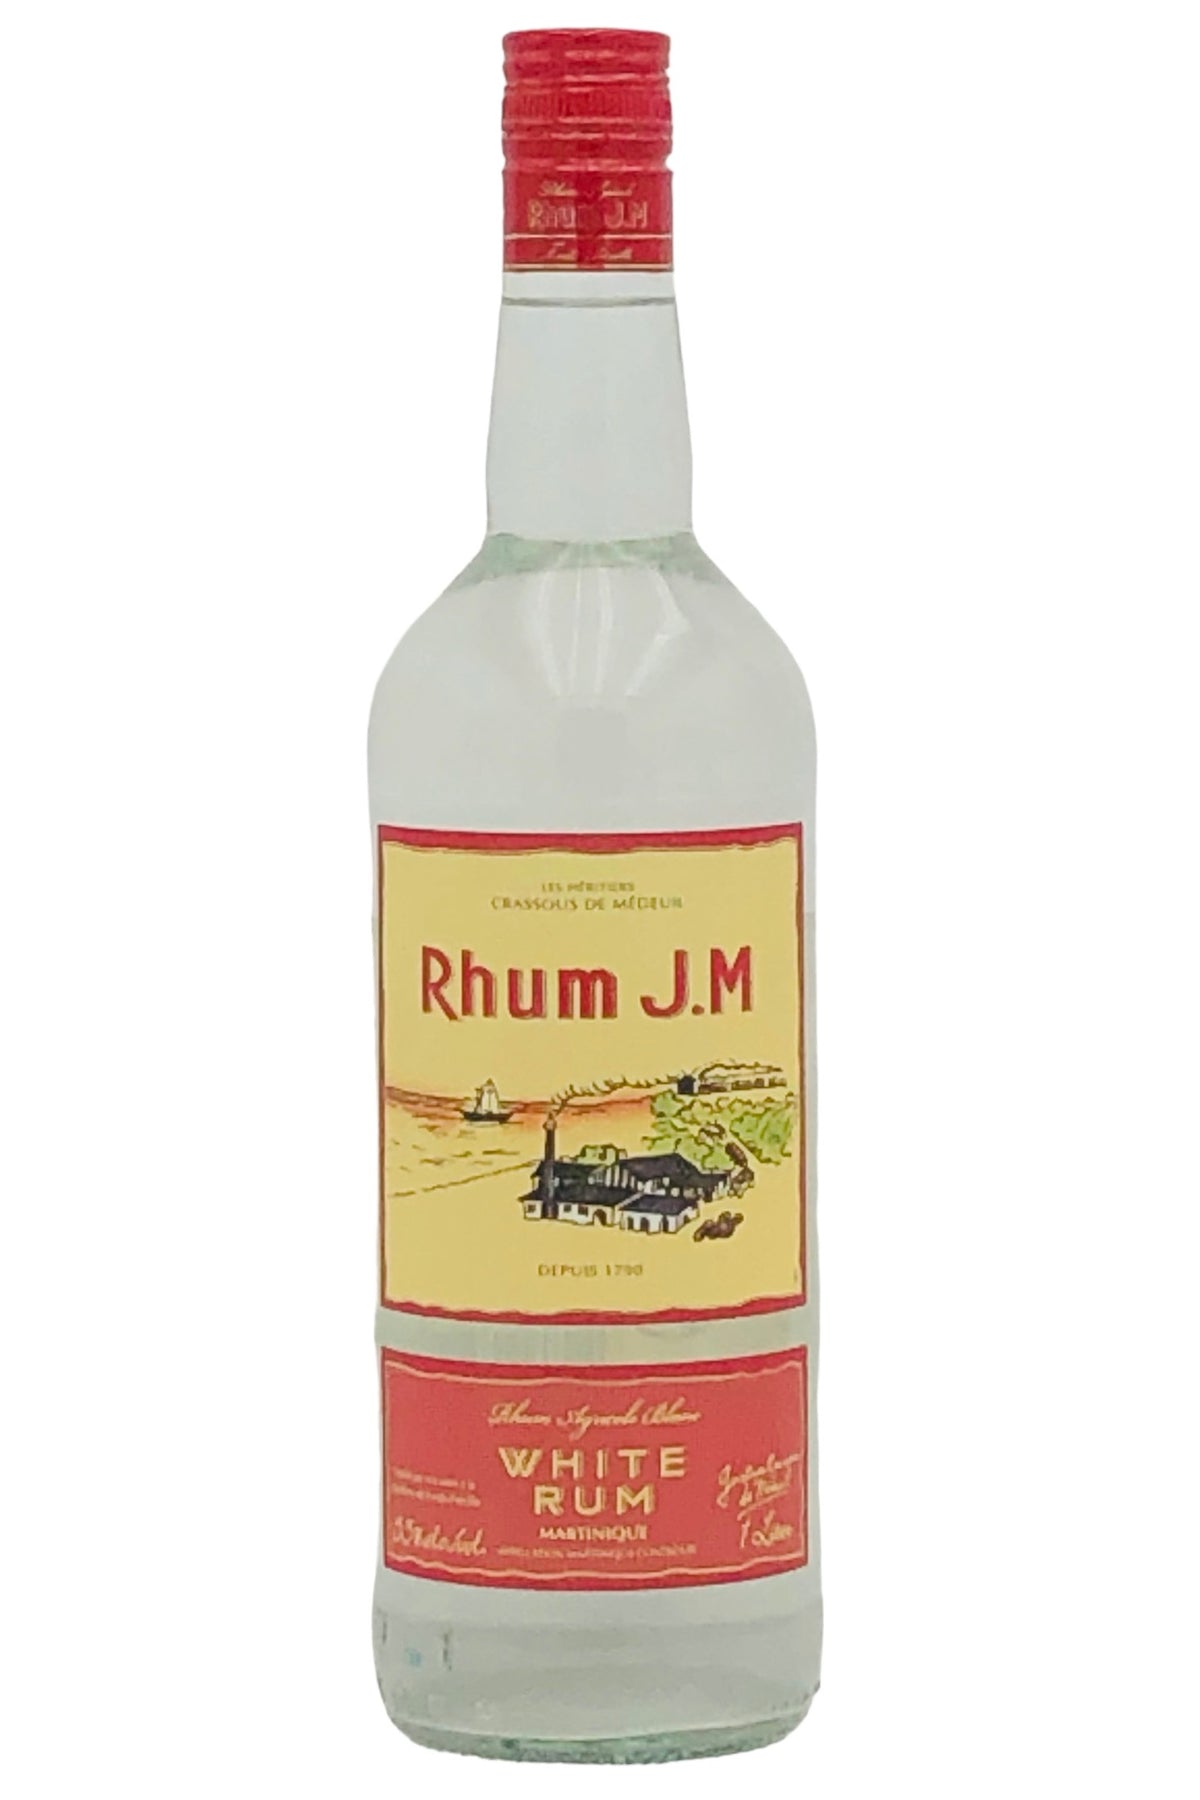 Rhum JM White Rum Agricole Blanc Martinique 110 proof 1000 ml